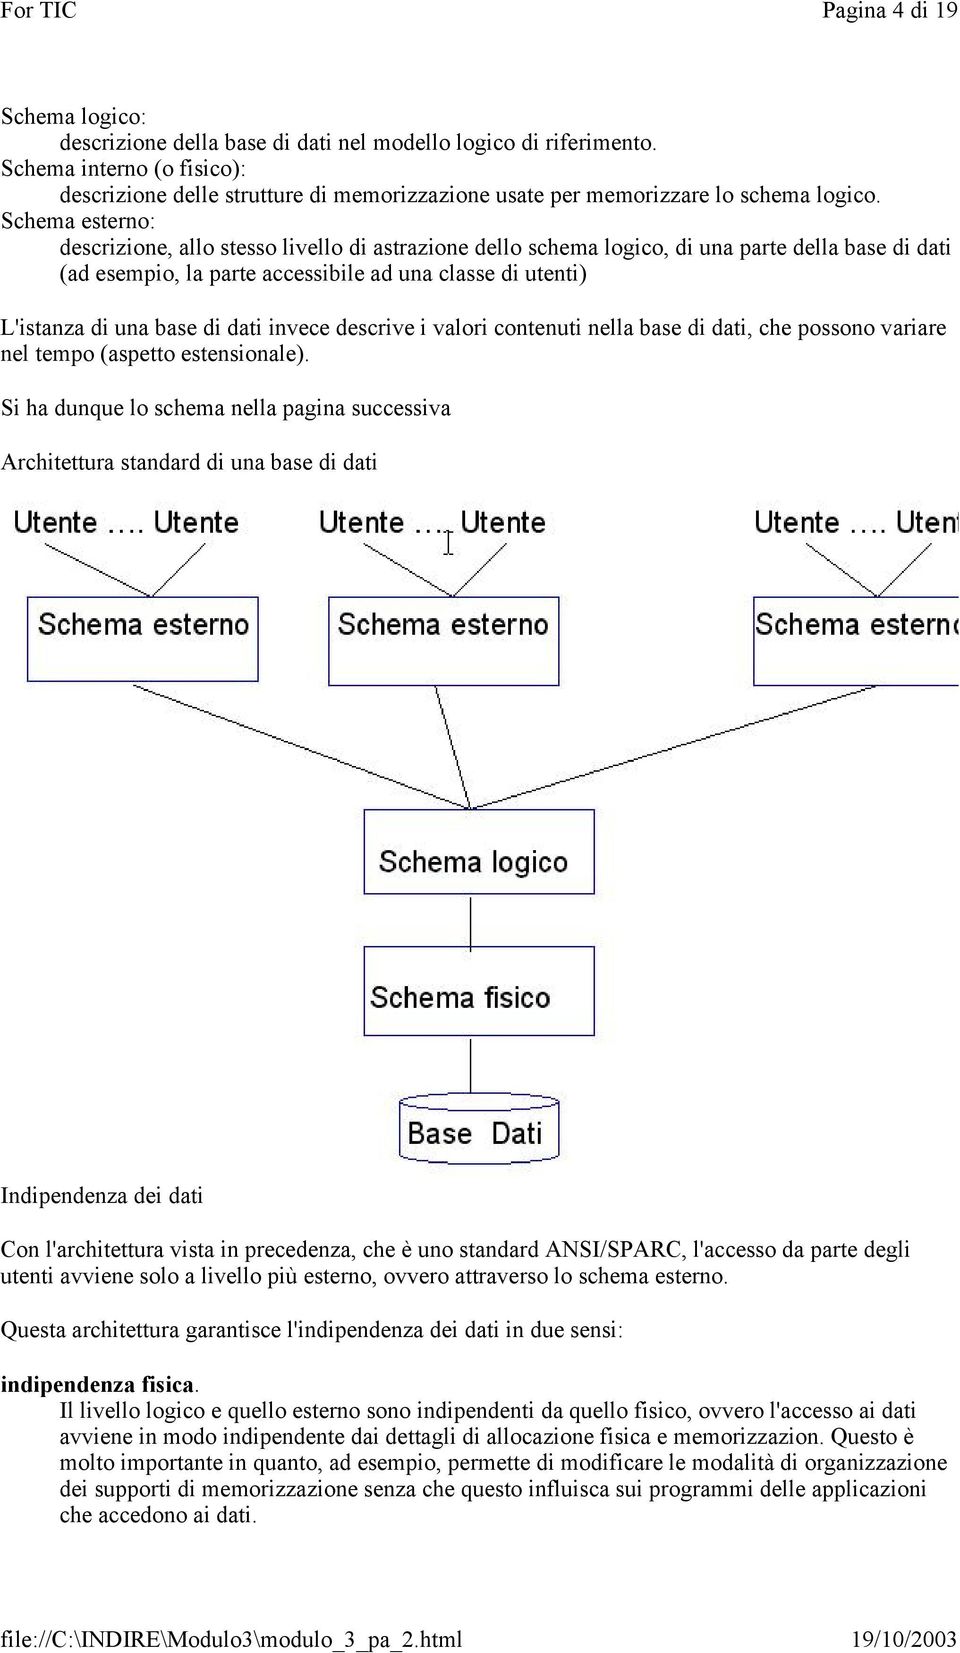 Schema esterno: descrizione, allo stesso livello di astrazione dello schema logico, di una parte della base di dati (ad esempio, la parte accessibile ad una classe di utenti) L'istanza di una base di